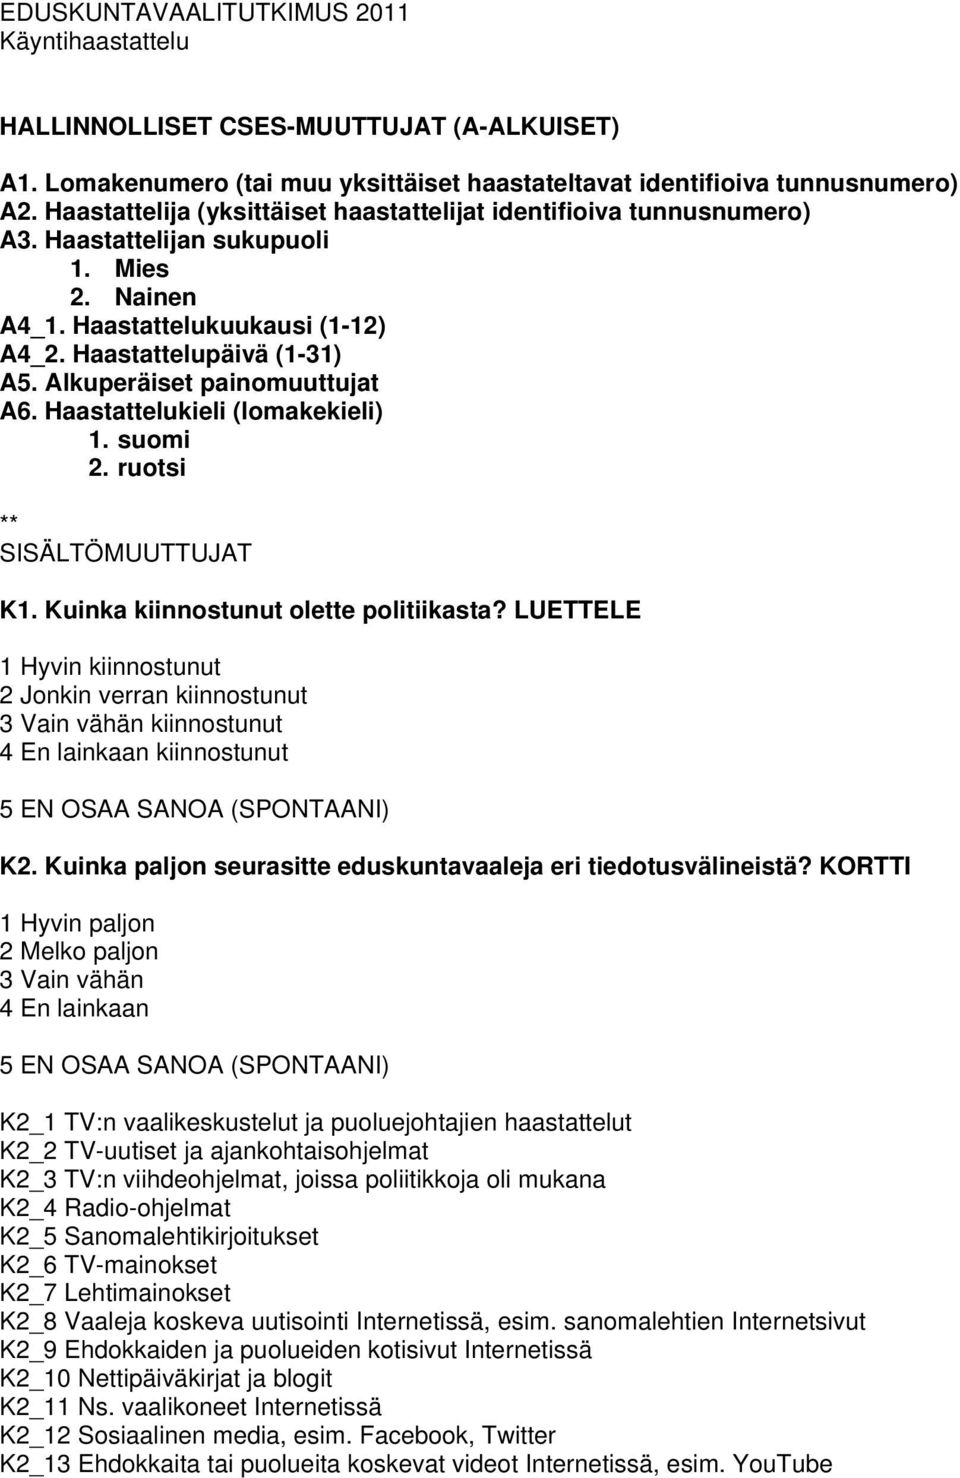 Alkuperäiset painomuuttujat A6. Haastattelukieli (lomakekieli) 1. suomi 2. ruotsi ** SISÄLTÖMUUTTUJAT K1. Kuinka kiinnostunut olette politiikasta?